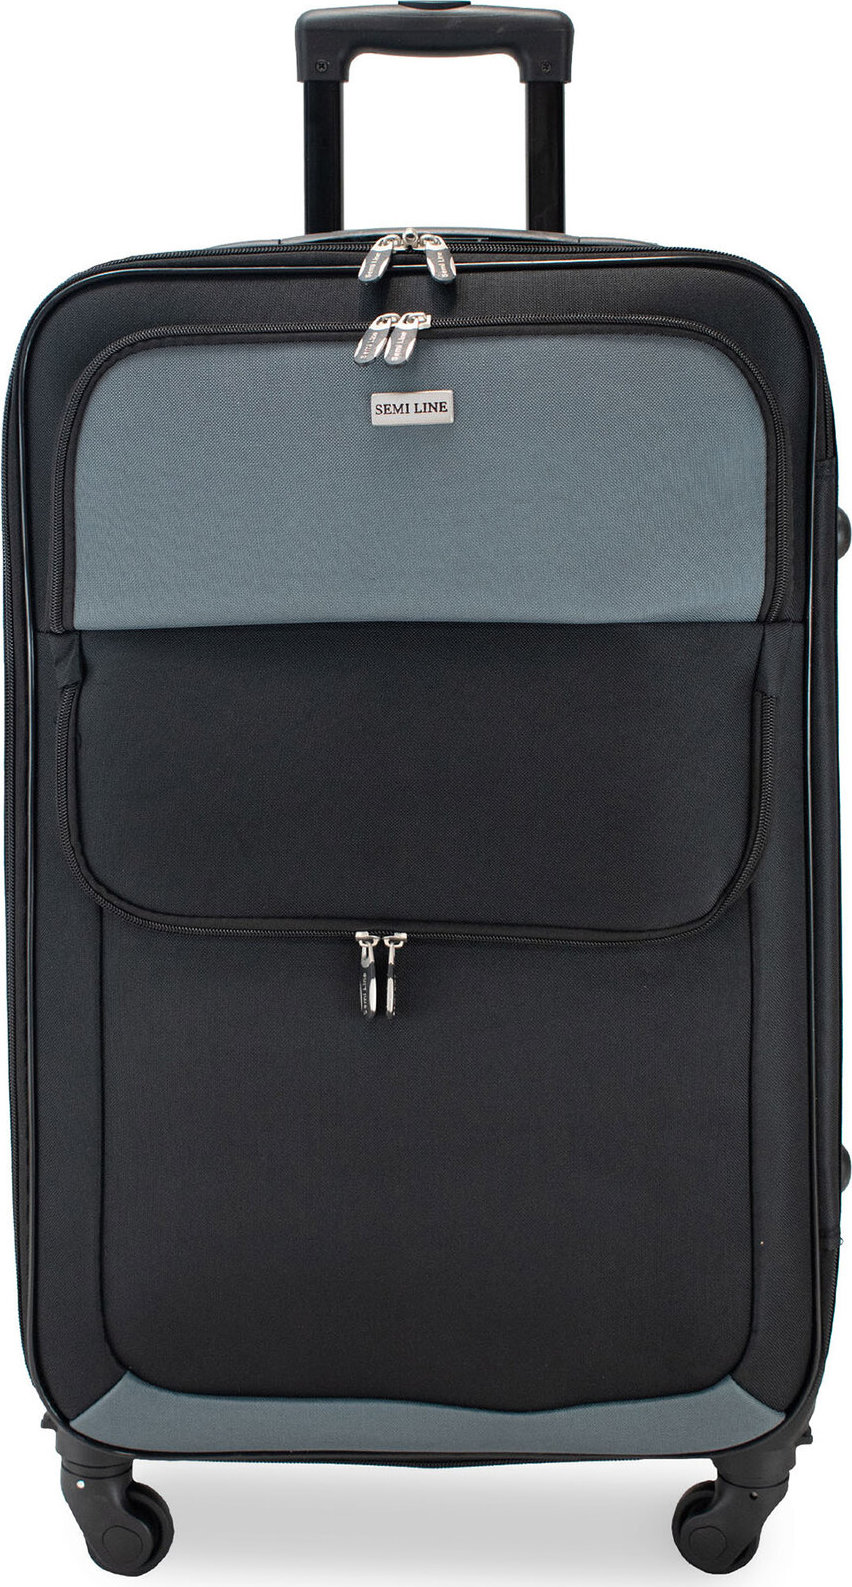 Velký kufr Semi Line T5602-5 Černá